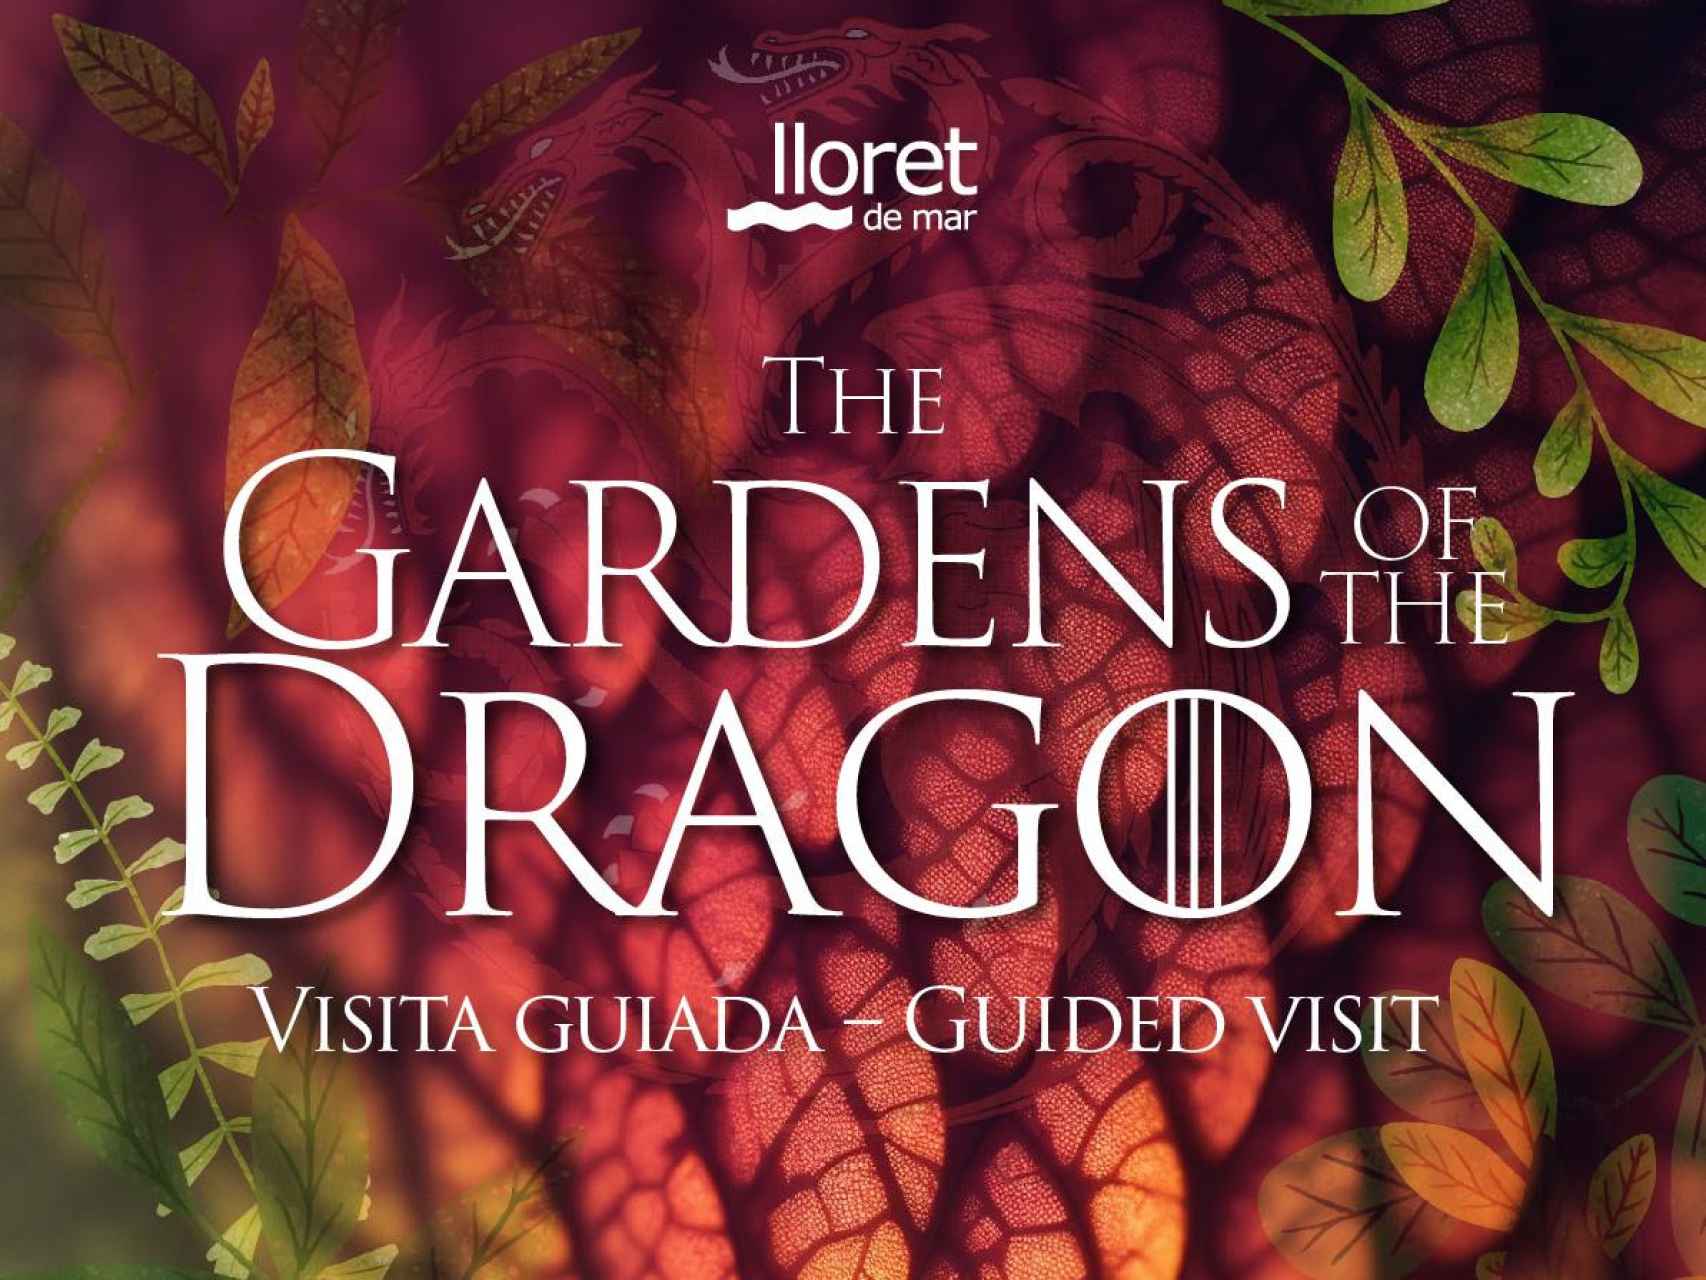 Imagen promocional sobre los 'jardines del dragón' de Lloret